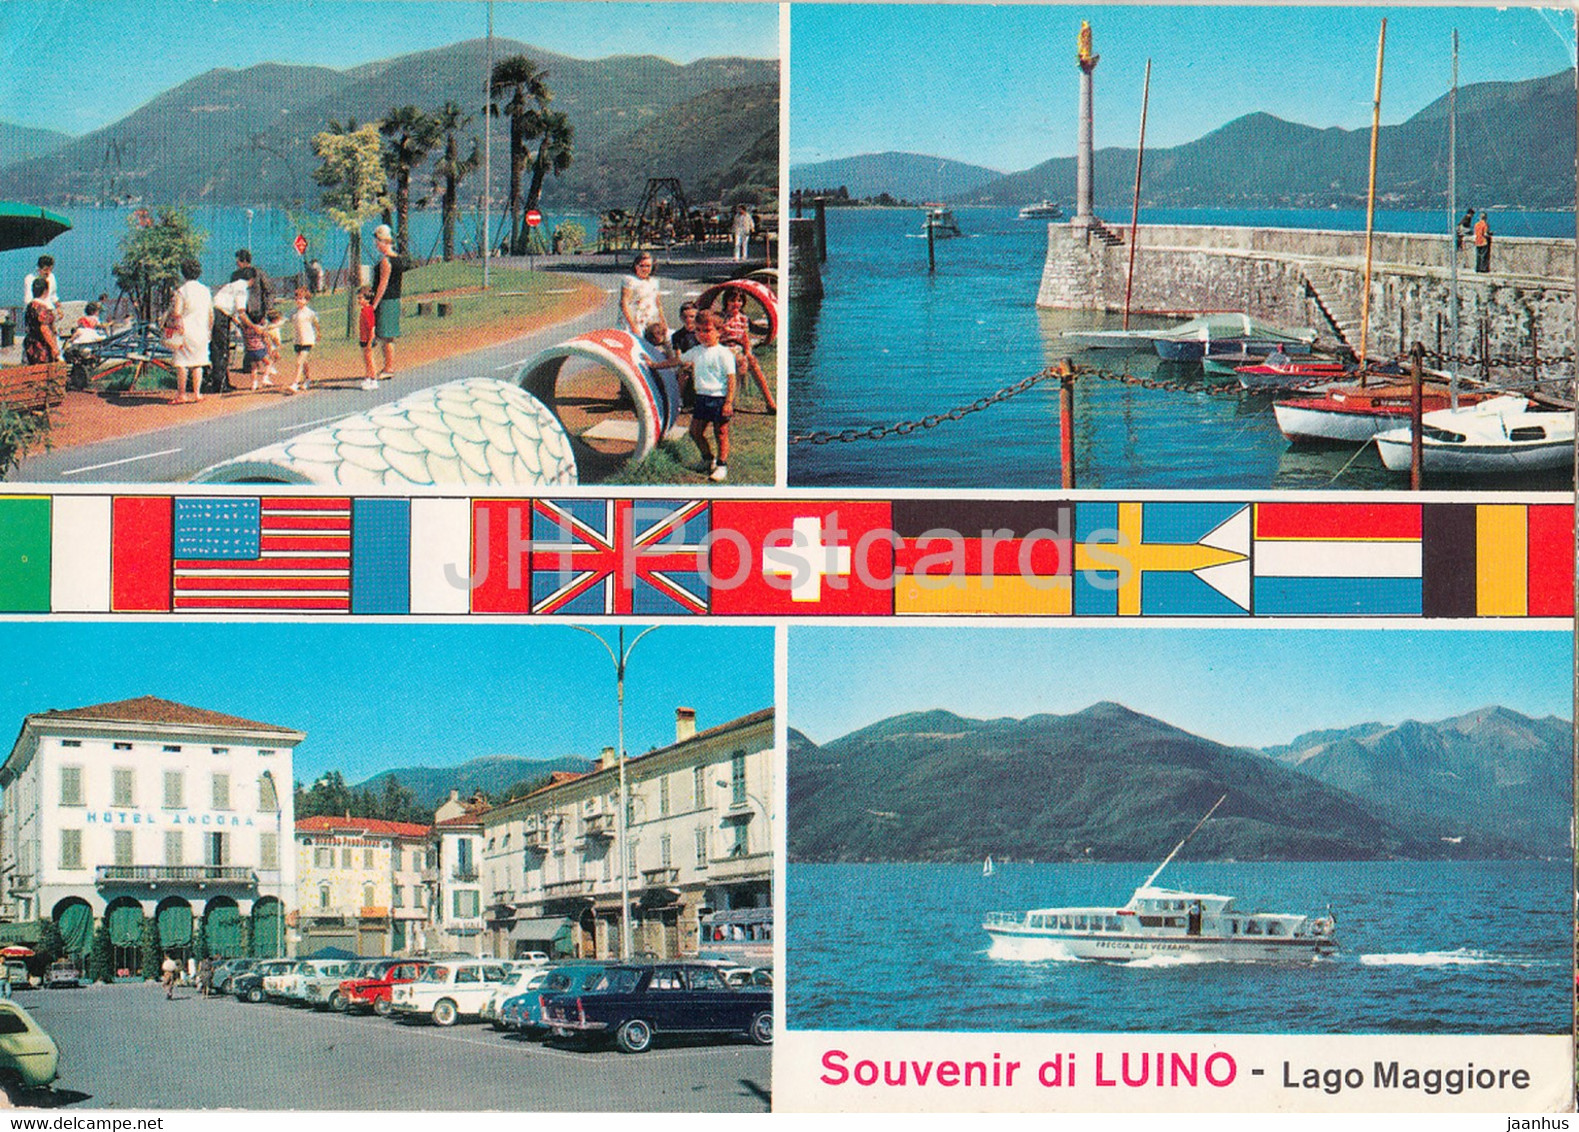 Souvenir Di Luino - Lago Maggiore - Car - Boat - Multiview - 1980 - Italy - Italia - Used - Luino